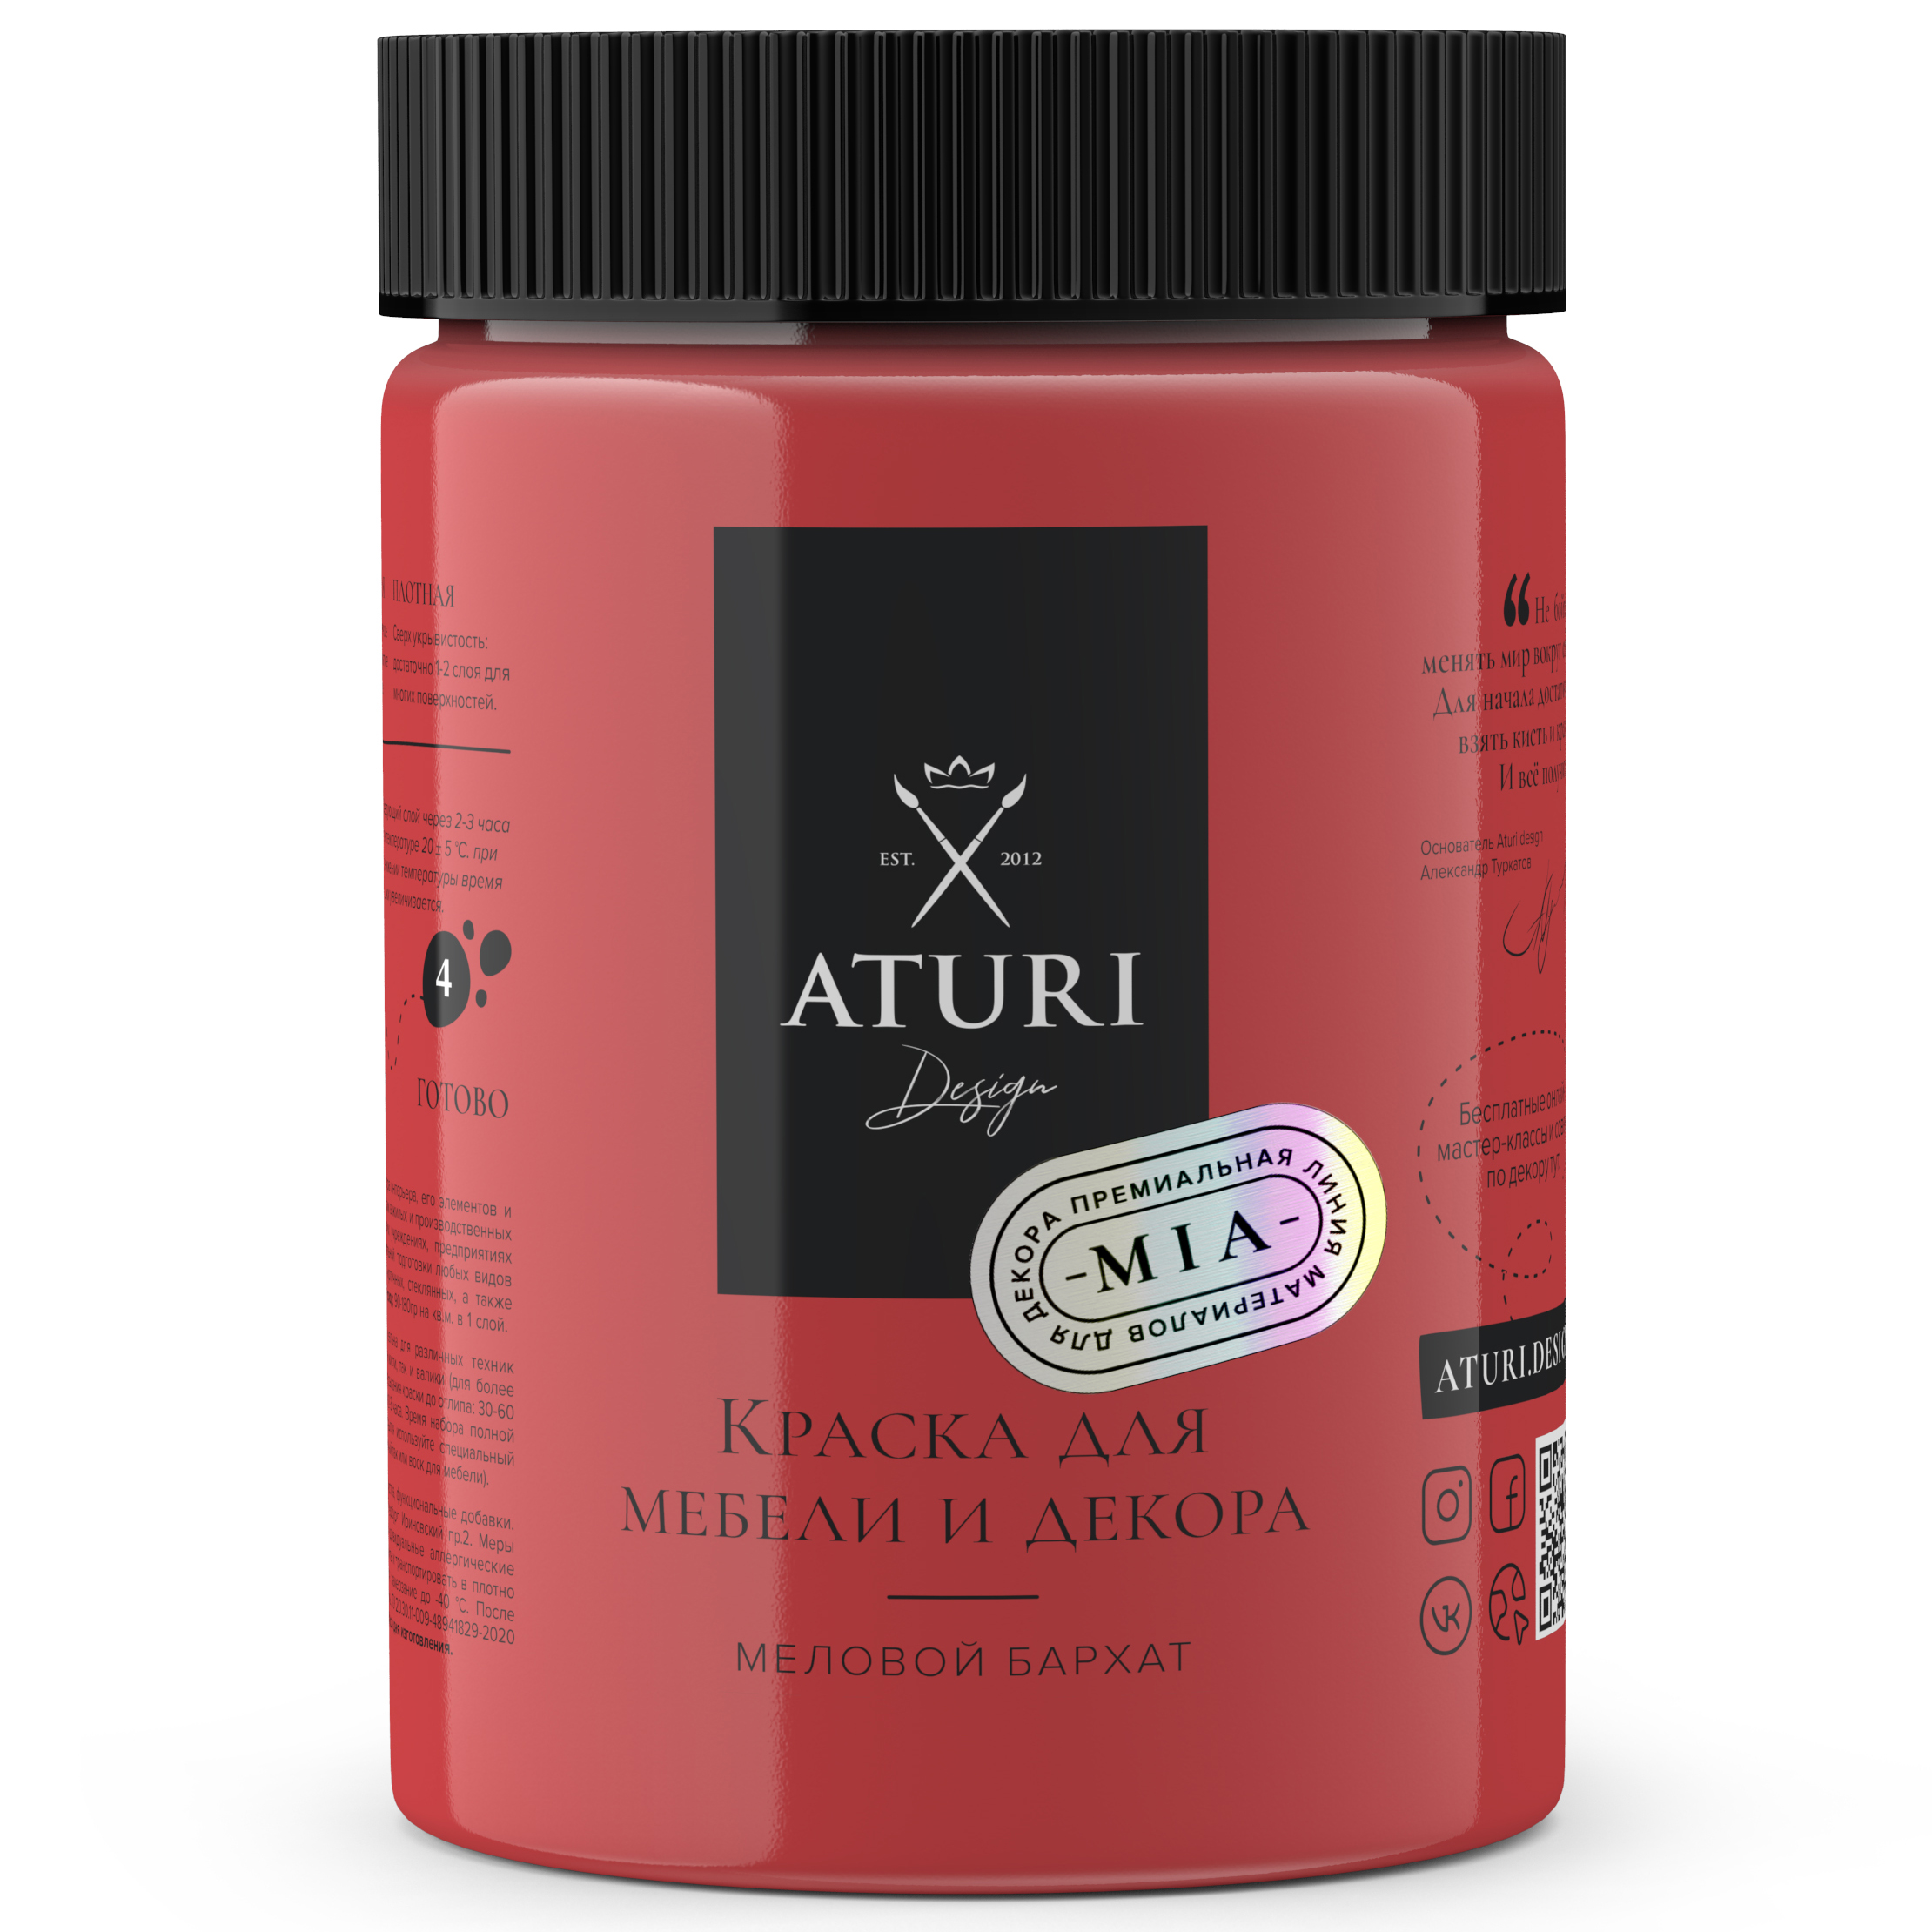 Краска Aturi Design Mia для мебели и декора, меловой бархат; Цвет: Красная помада, 830гр губная помада тон 96 4 3 г